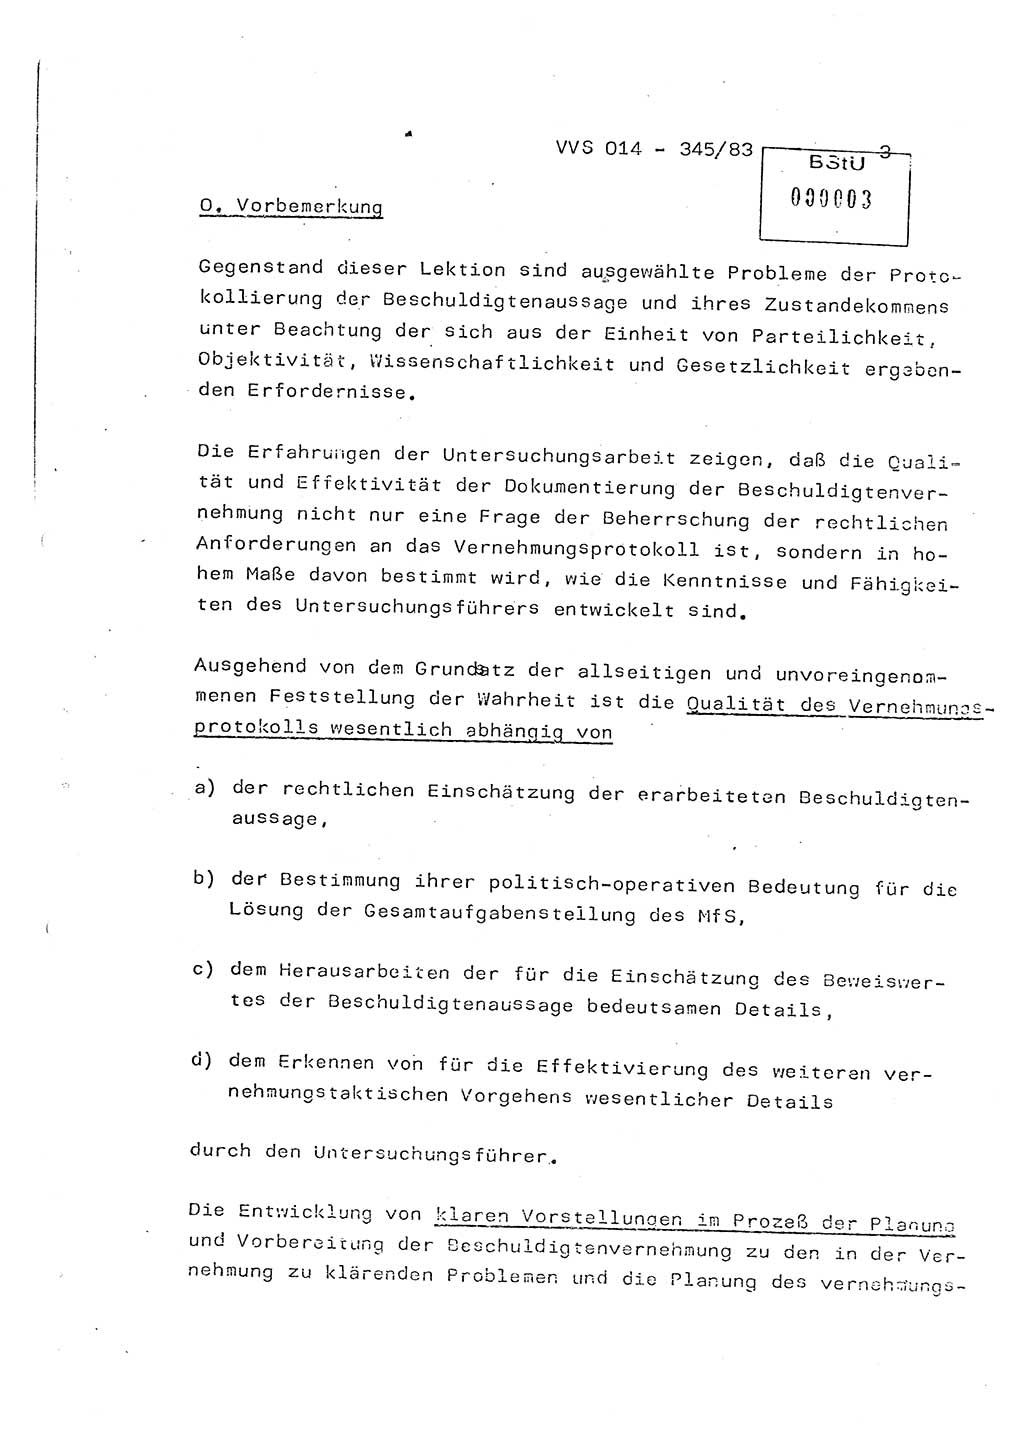 Lektion Ministerium für Staatssicherheit (MfS) [Deutsche Demokratische Republik (DDR)], Hauptabteilung (HA) Ⅸ, Vertrauliche Verschlußsache (VVS) o014-345/83, Berlin 1983, Seite 3 (Lekt. MfS DDR HA Ⅸ VVS o014-345/83 1983, S. 3)